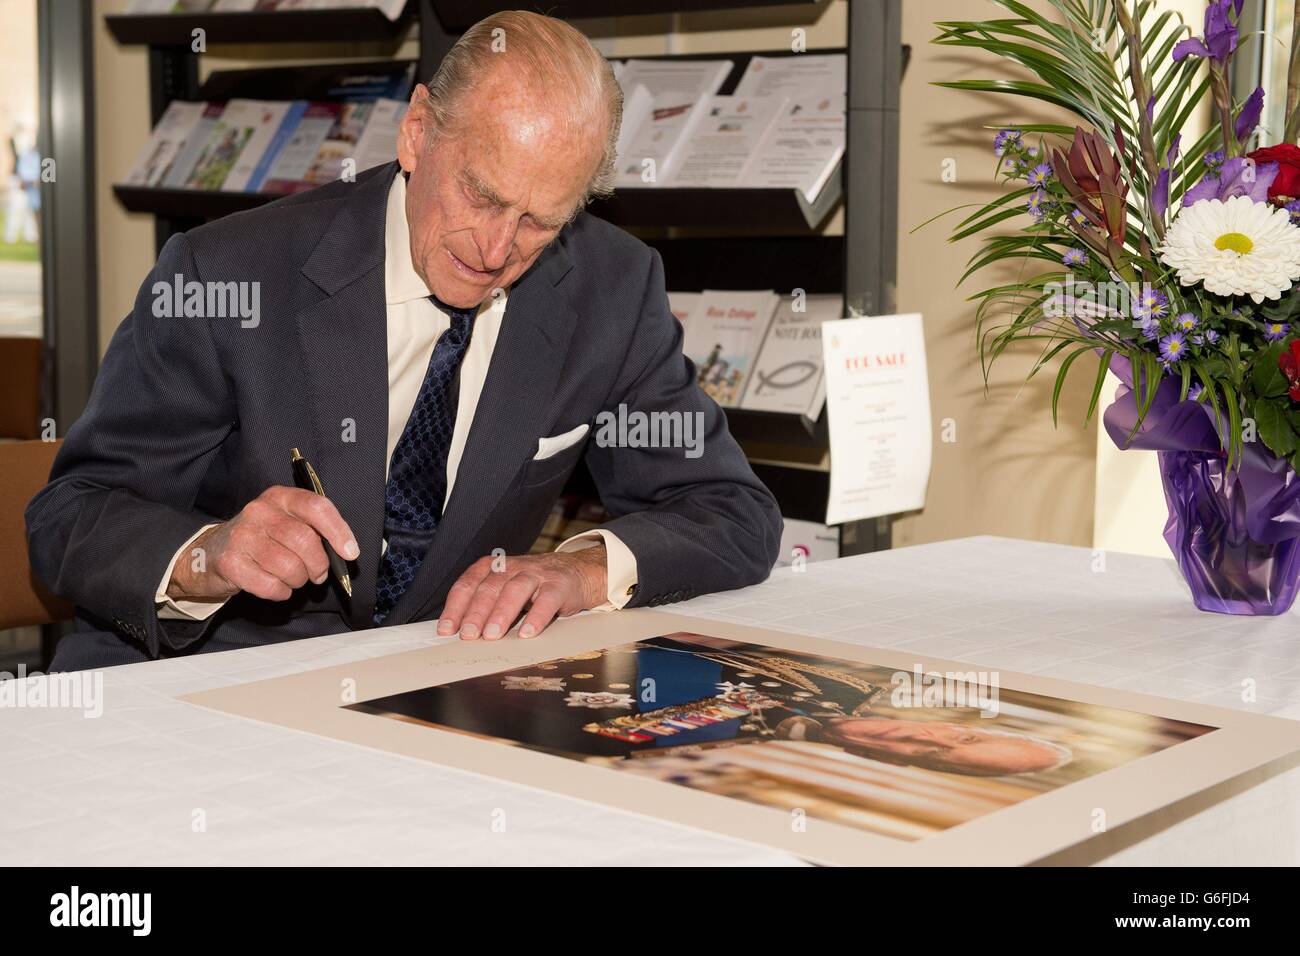 Der Herzog von Edinburgh, unterzeichnen ein Porträt von sich selbst, während seines offiziellen Besuchs in der St. Michael's Care Complex in Aylsham, Norfolk, die Pflege für ältere Menschen. Stockfoto